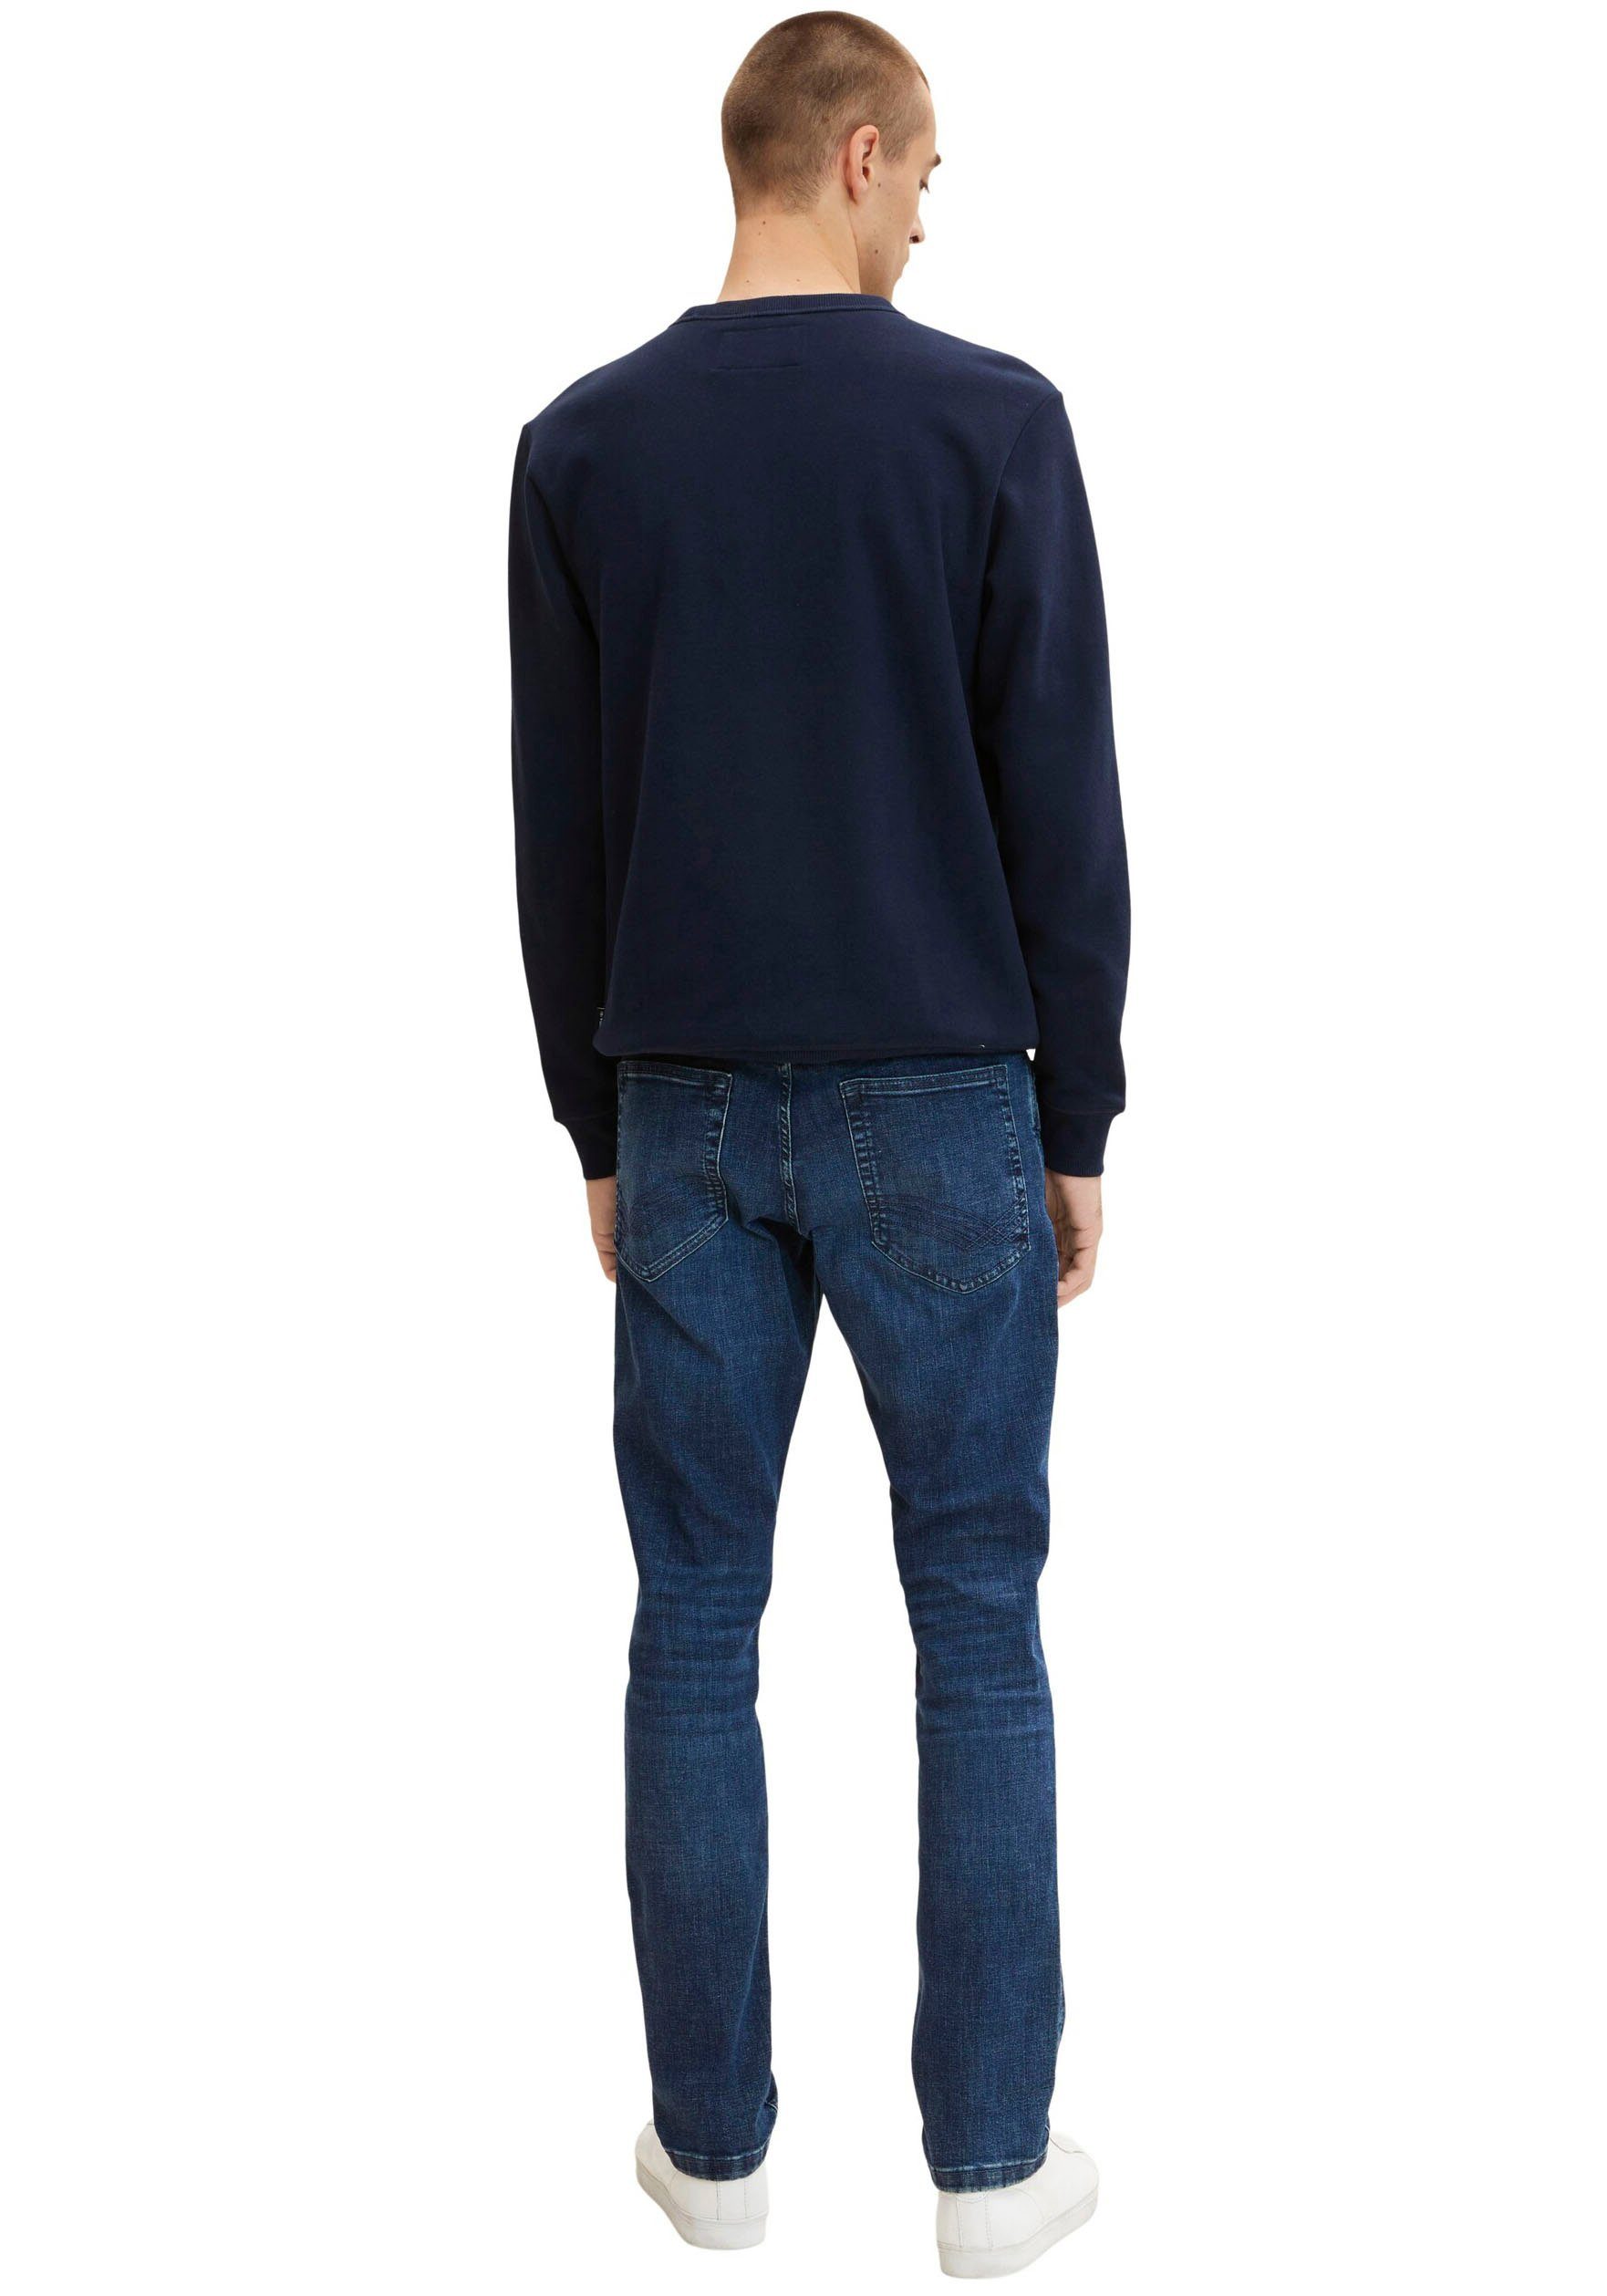 lässiger in Slim-fit-Jeans blue stone JOSH Optik TOM used TAILOR mid